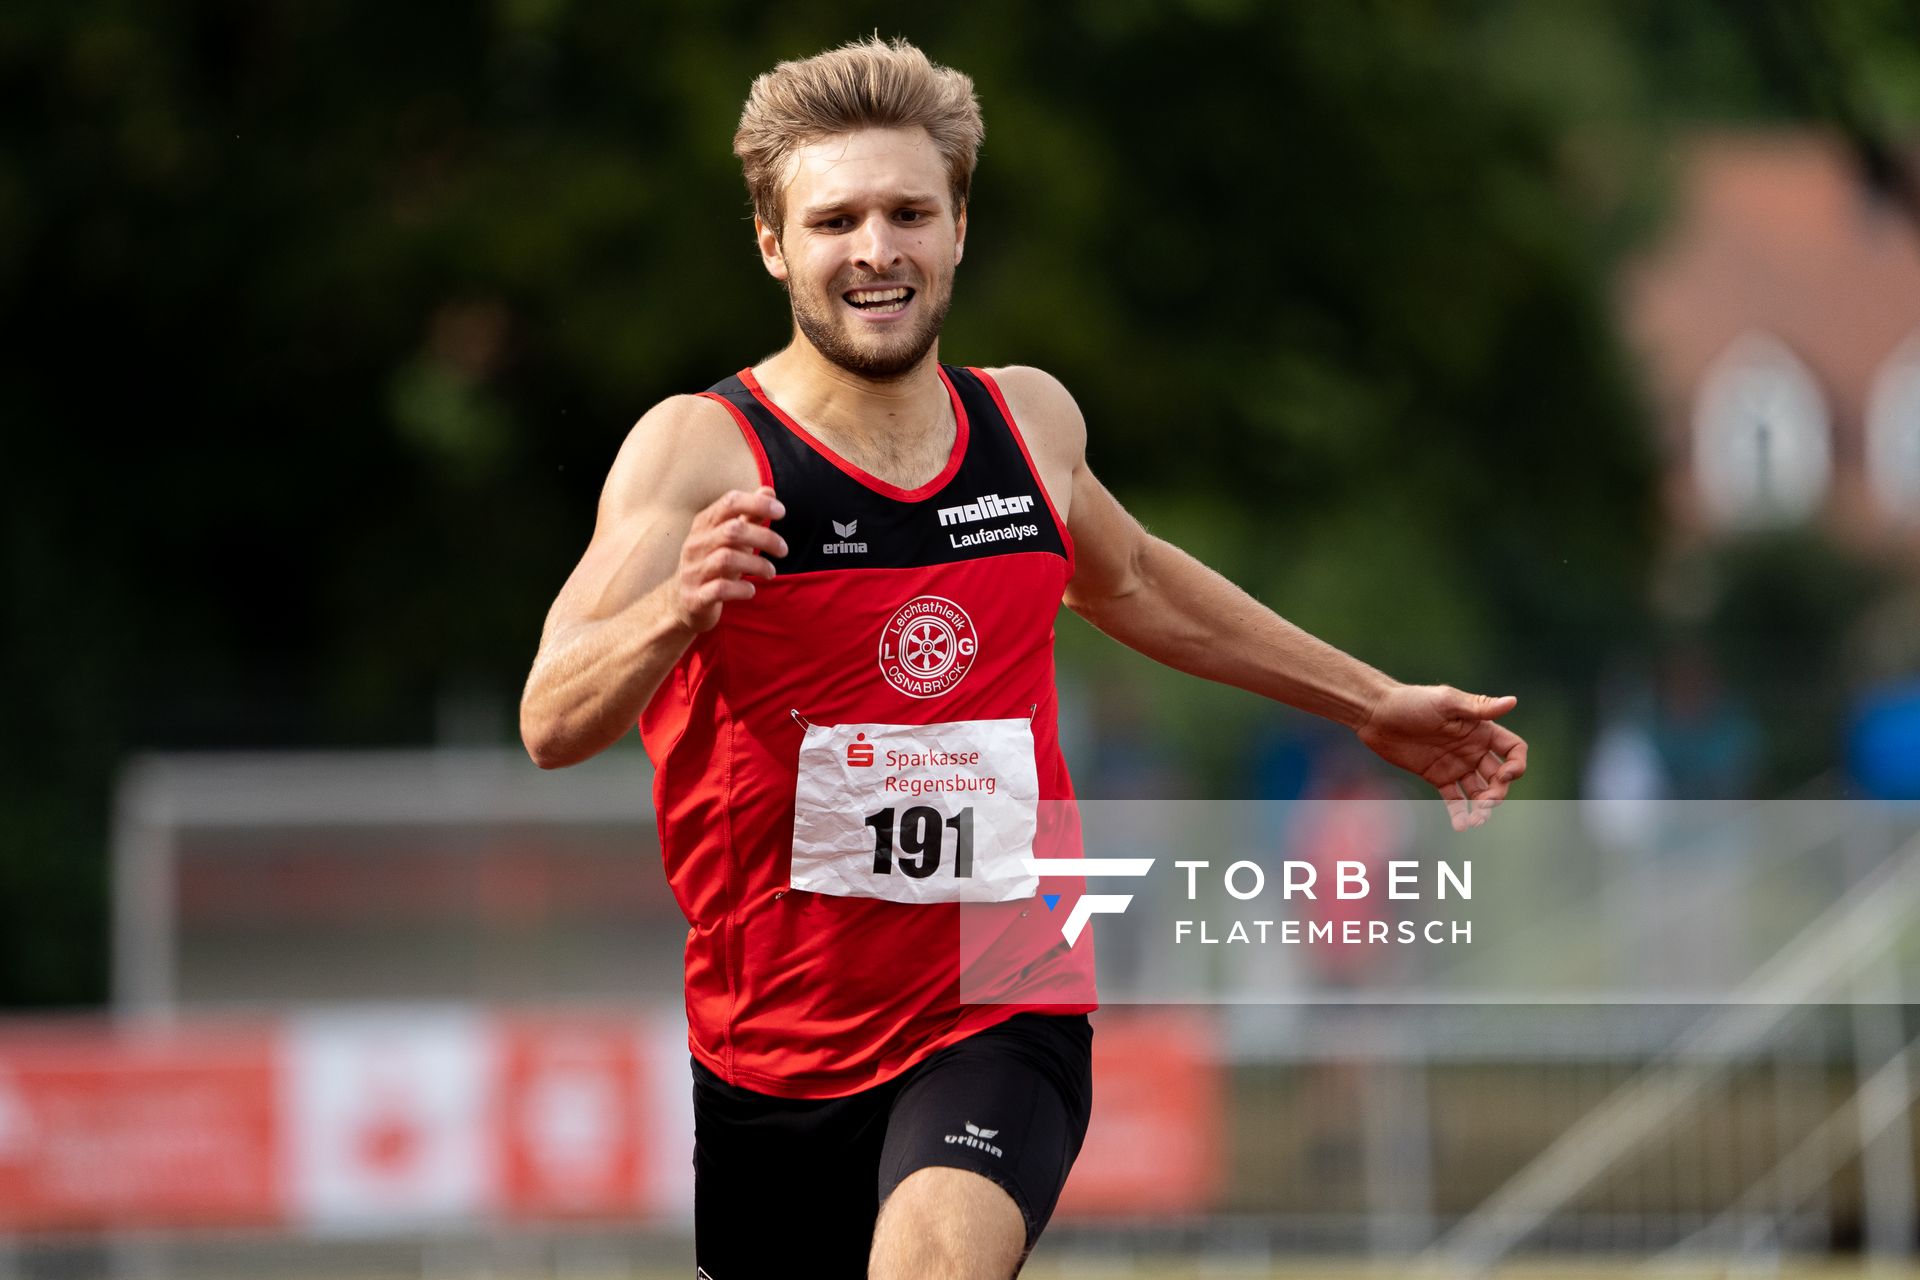 Fabian Dammermann (LG Osnabrueck) ueber 400m am 26.07.2020 waehrend der Sparkassen Gala in Regensburg